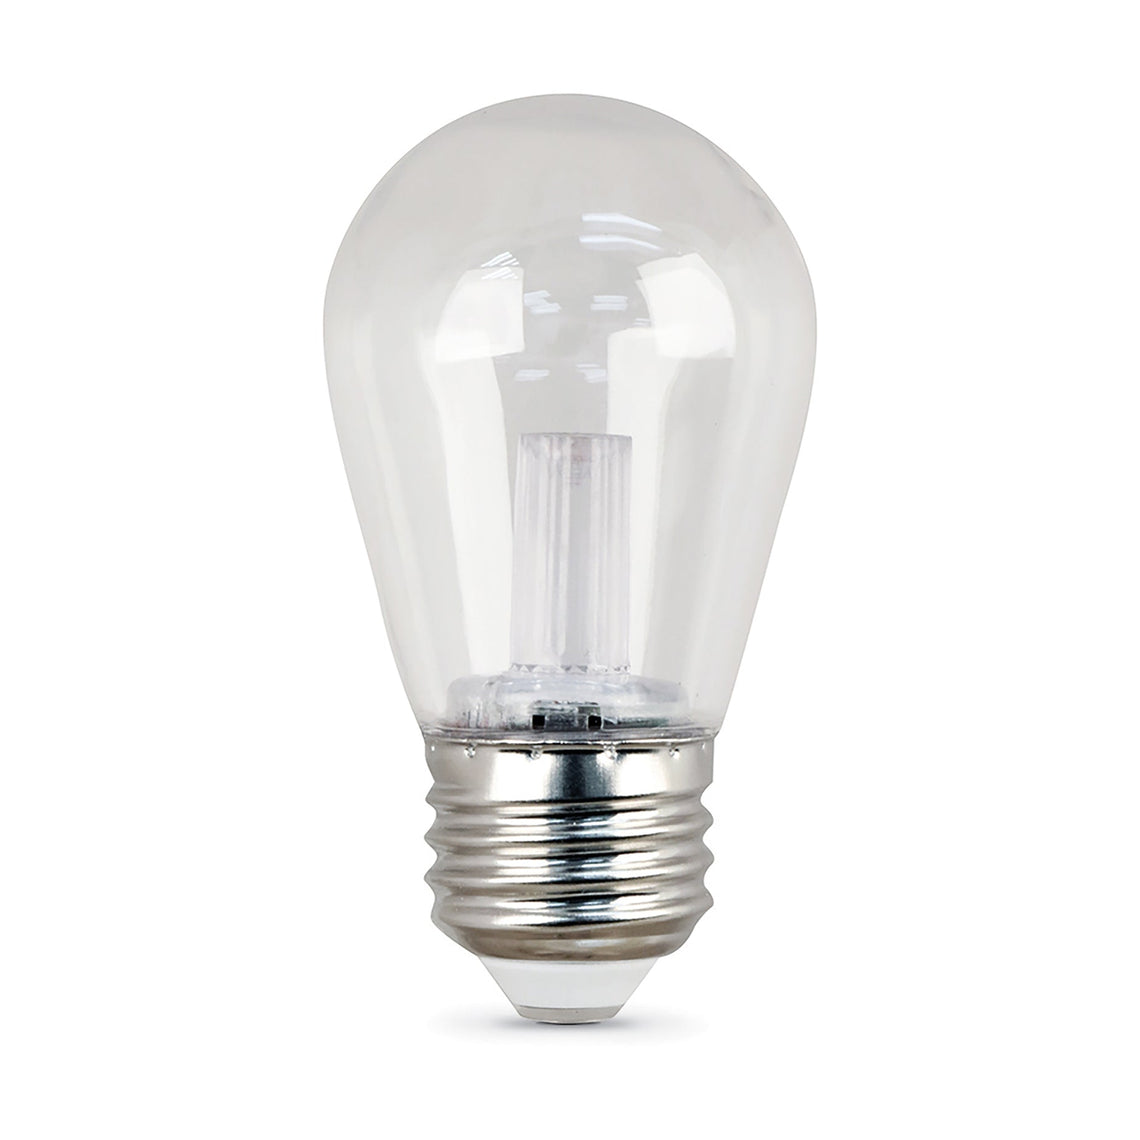 R7S LED bulbs, 11W, S14 Bulb-3000K,80 Lumens, E26, Medium Base,clear